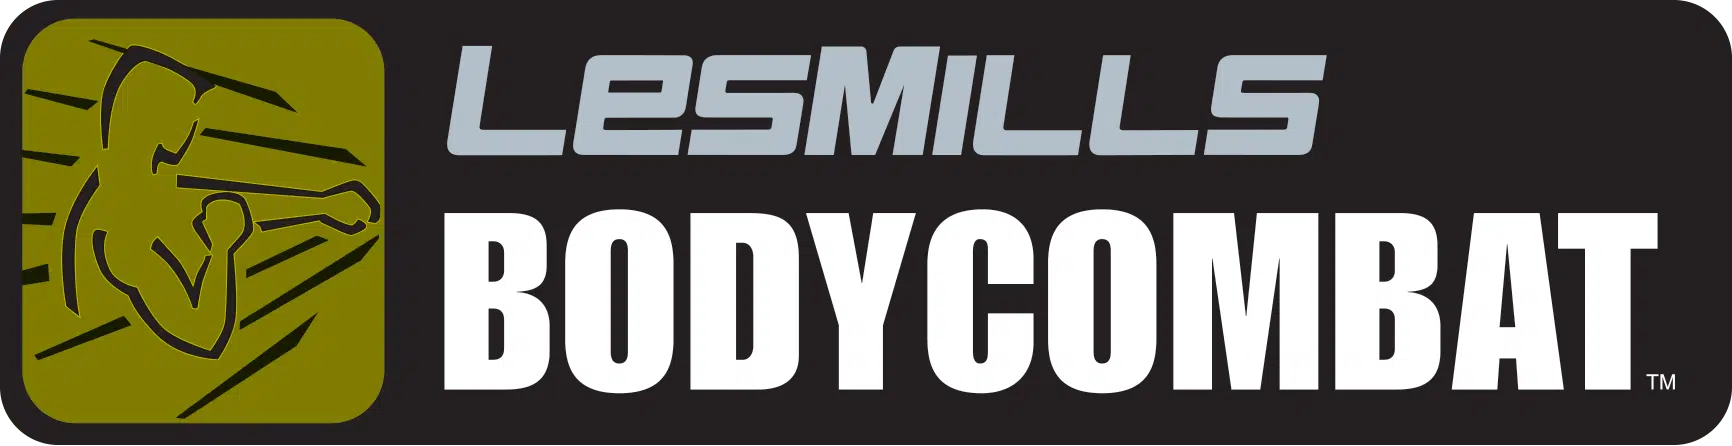 les mills combat logo